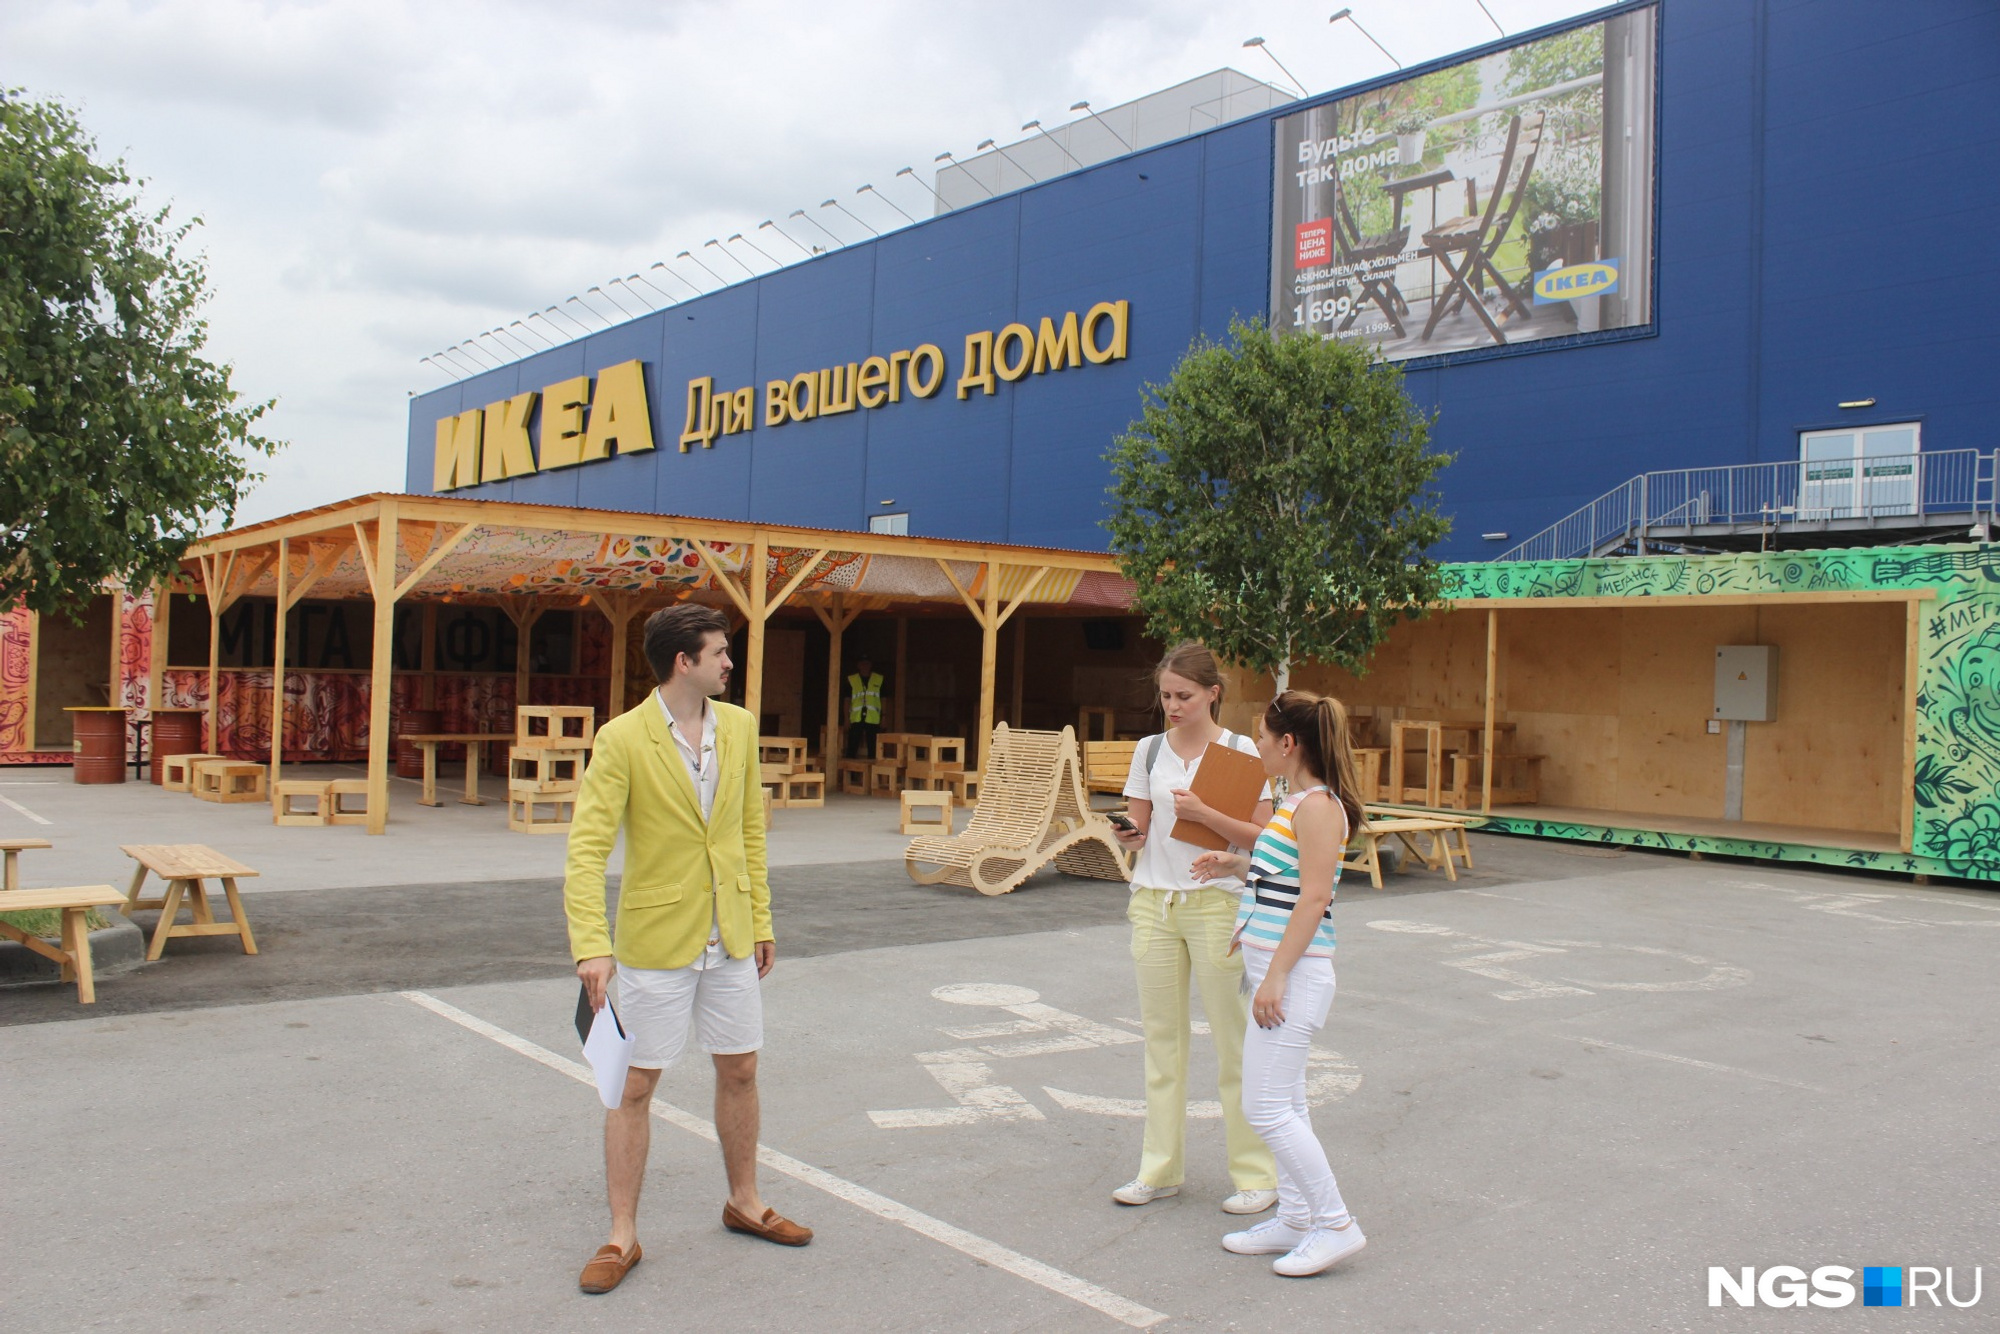 Площадка «Вкус лета» расположилась рядом с магазином ИКЕА. Фото Стаса Соколова